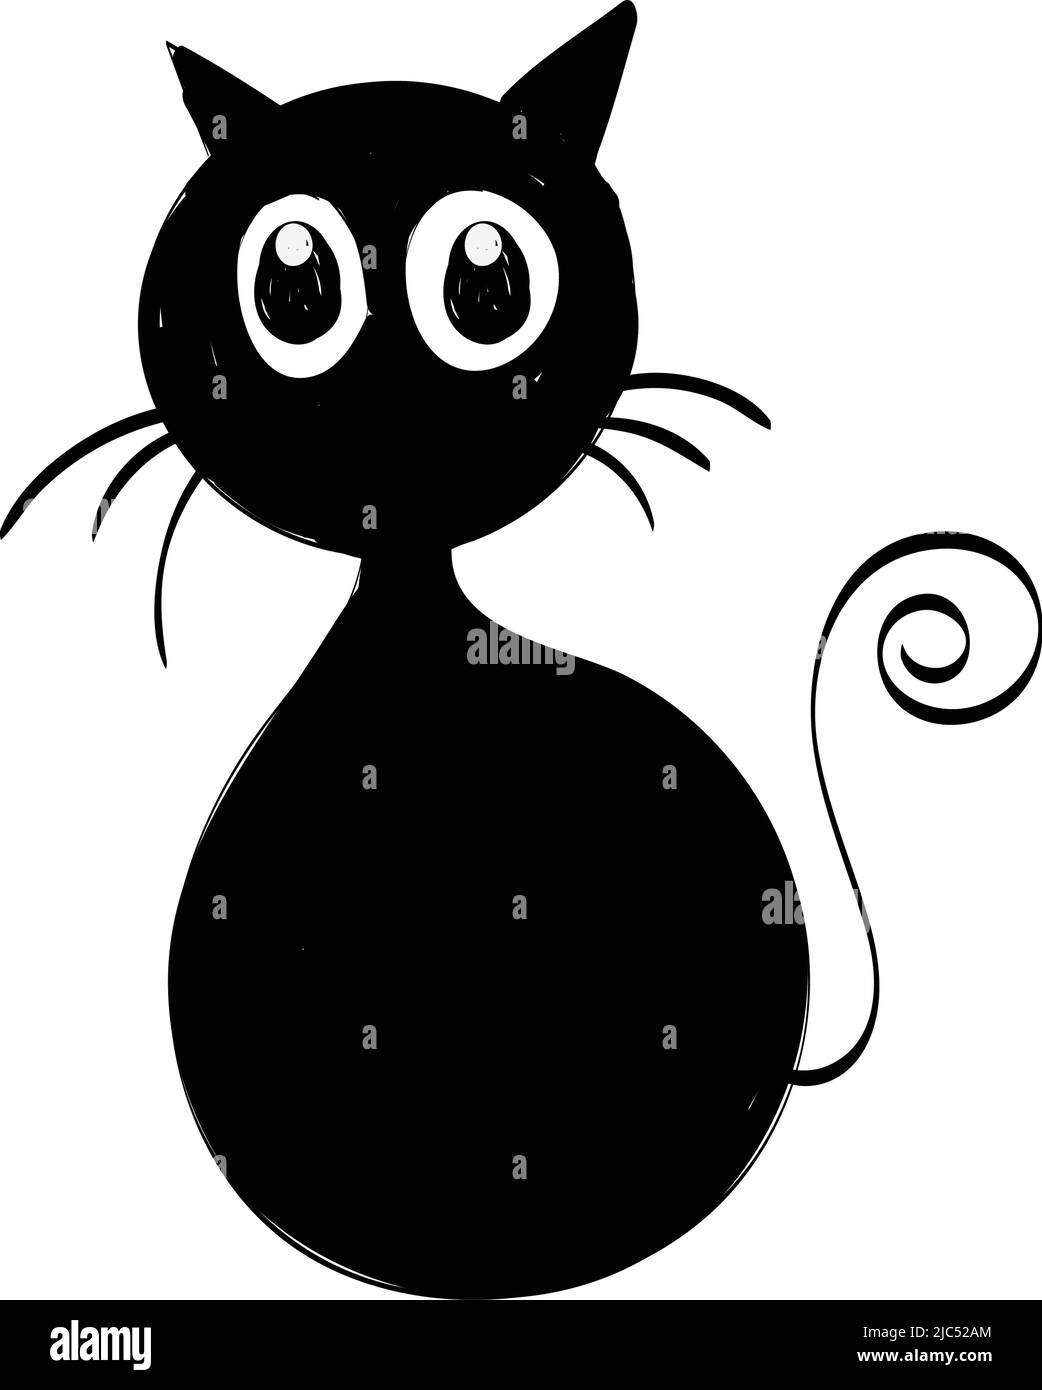 Cat sticker Imágenes de stock en blanco y negro - Alamy